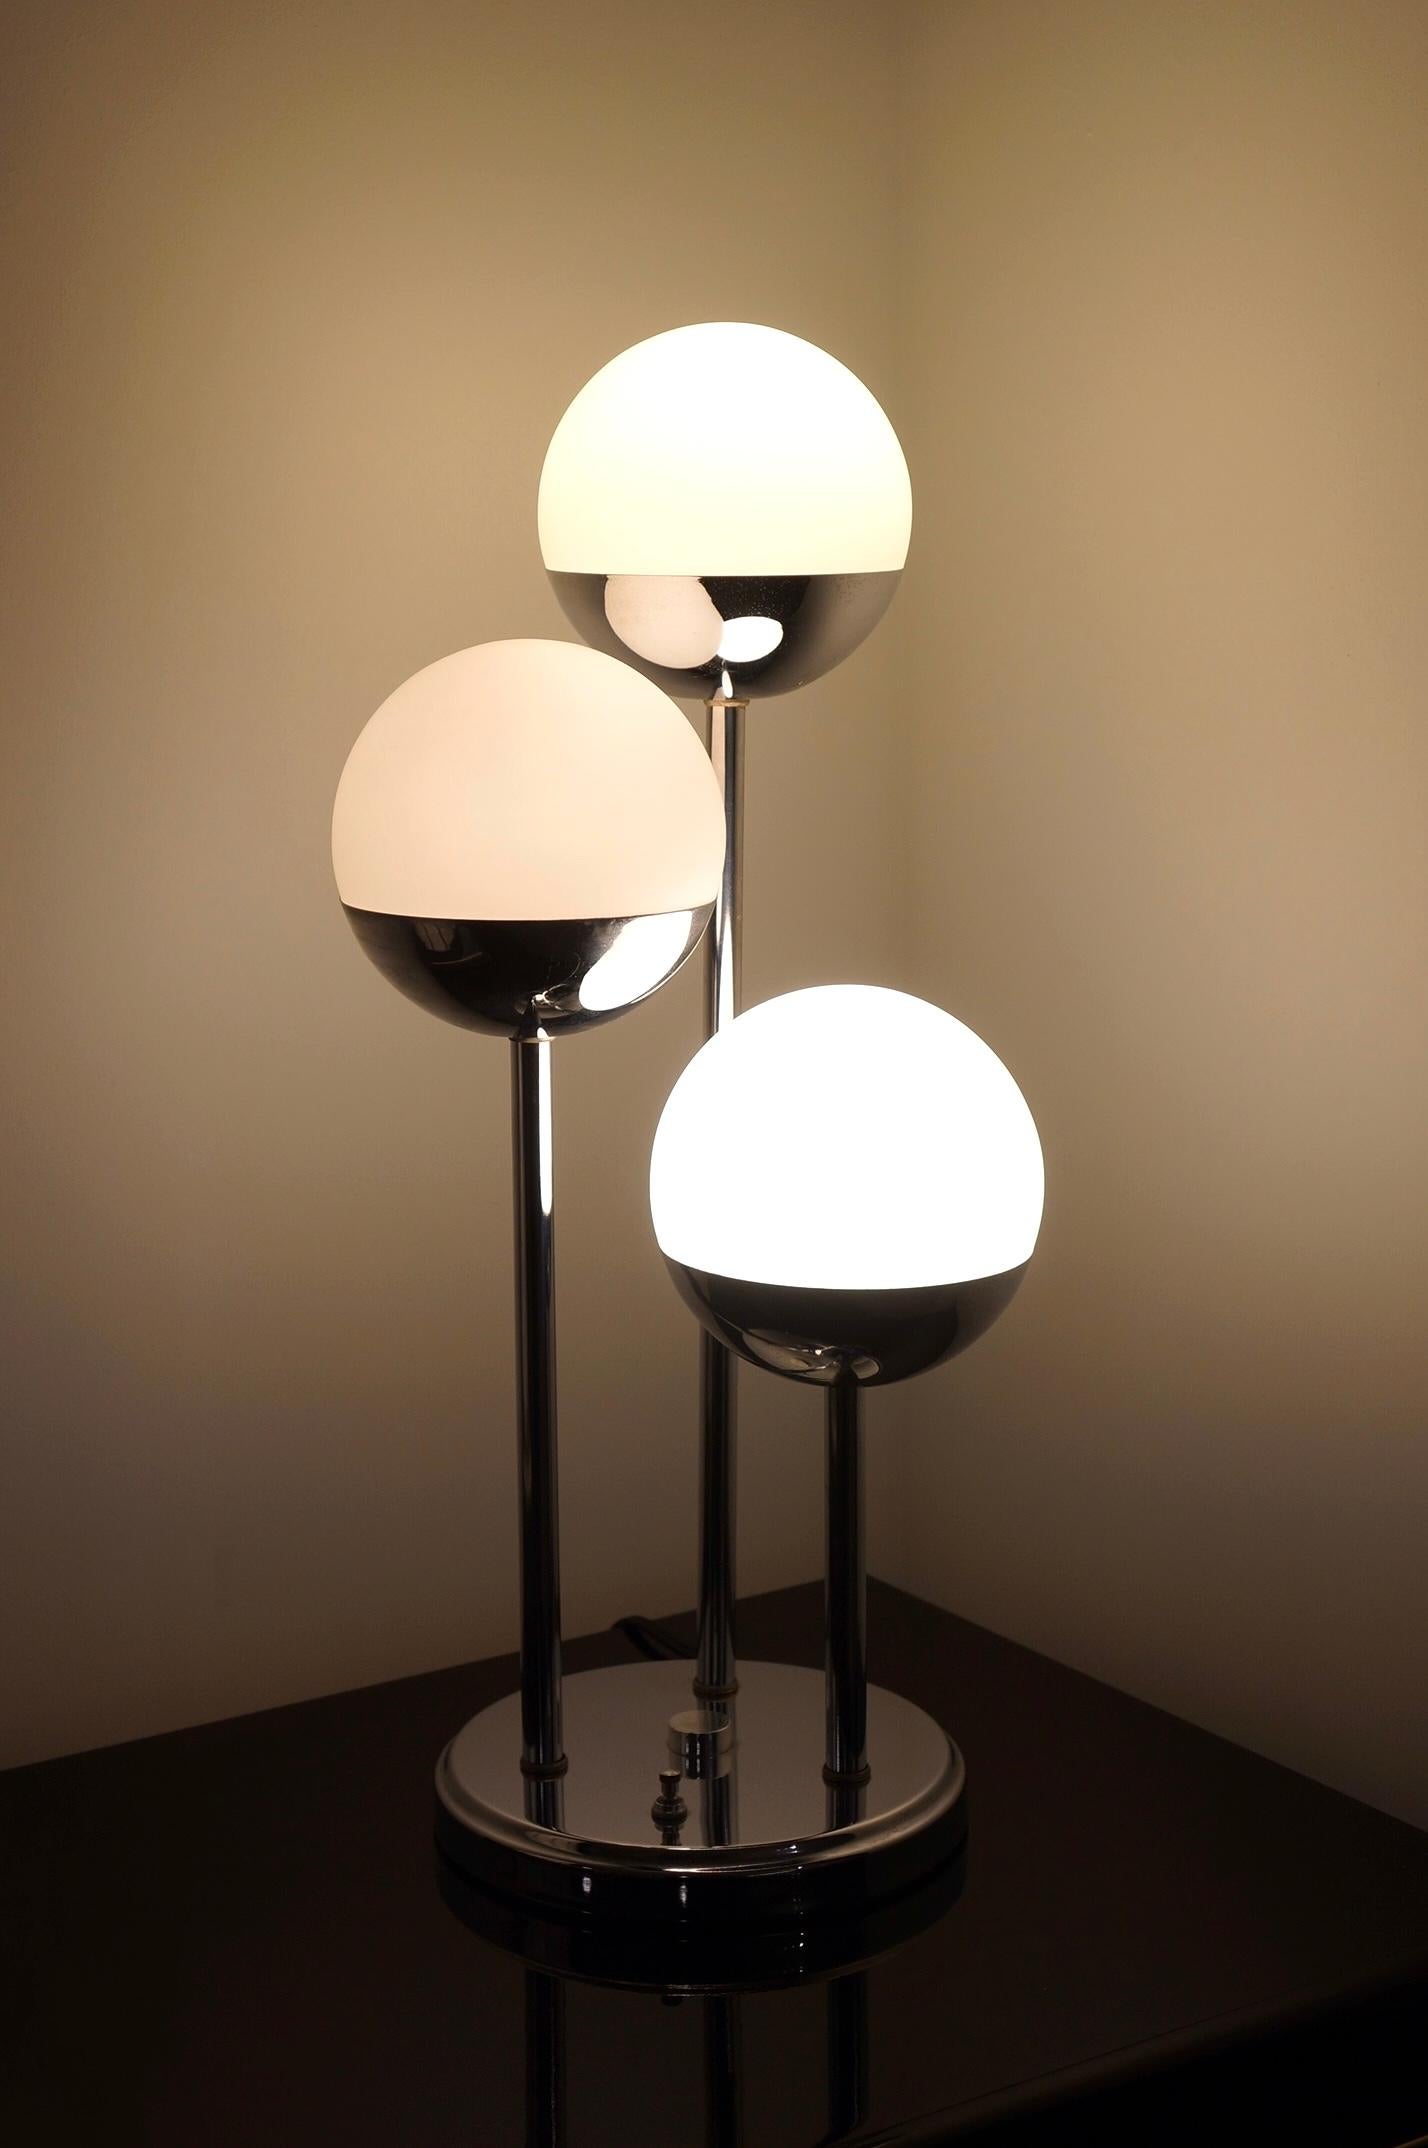 Lampe de table chromée de style Space AGE avec trois globes. Il a été fabriqué dans les années 1970. La base est chromée et les trois globes sont en verre laiteux. Il est composé de trois niveaux de hauteurs différentes. Il est doté de trois